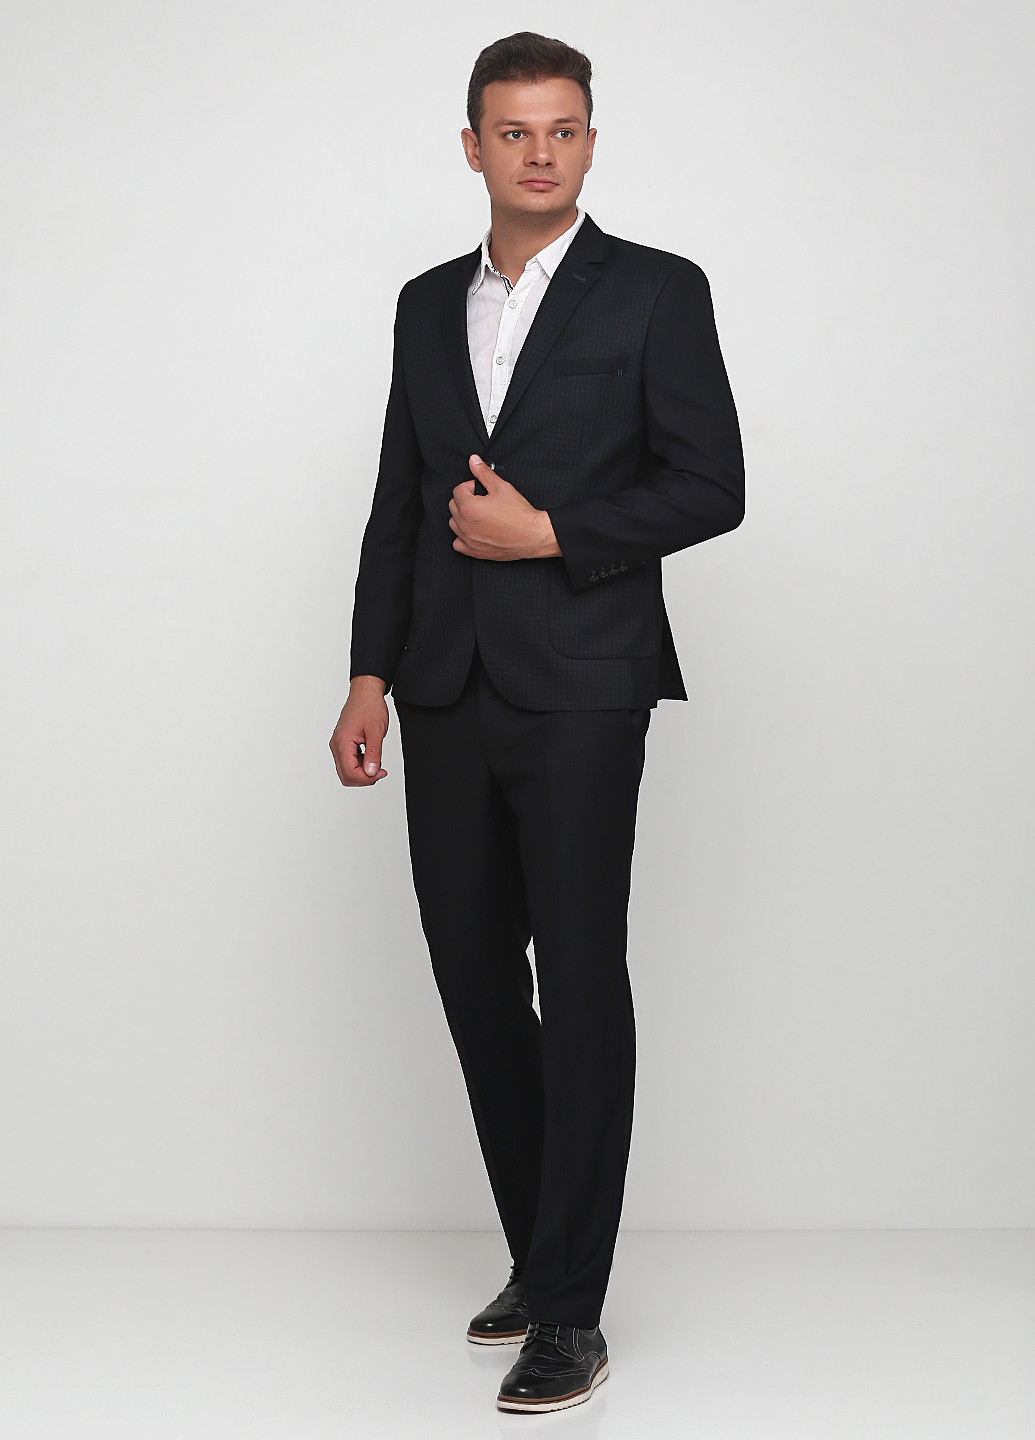 Черный демисезонный костюм (пиджак, брюки) с длинным рукавом, брючный Federico Cavallini